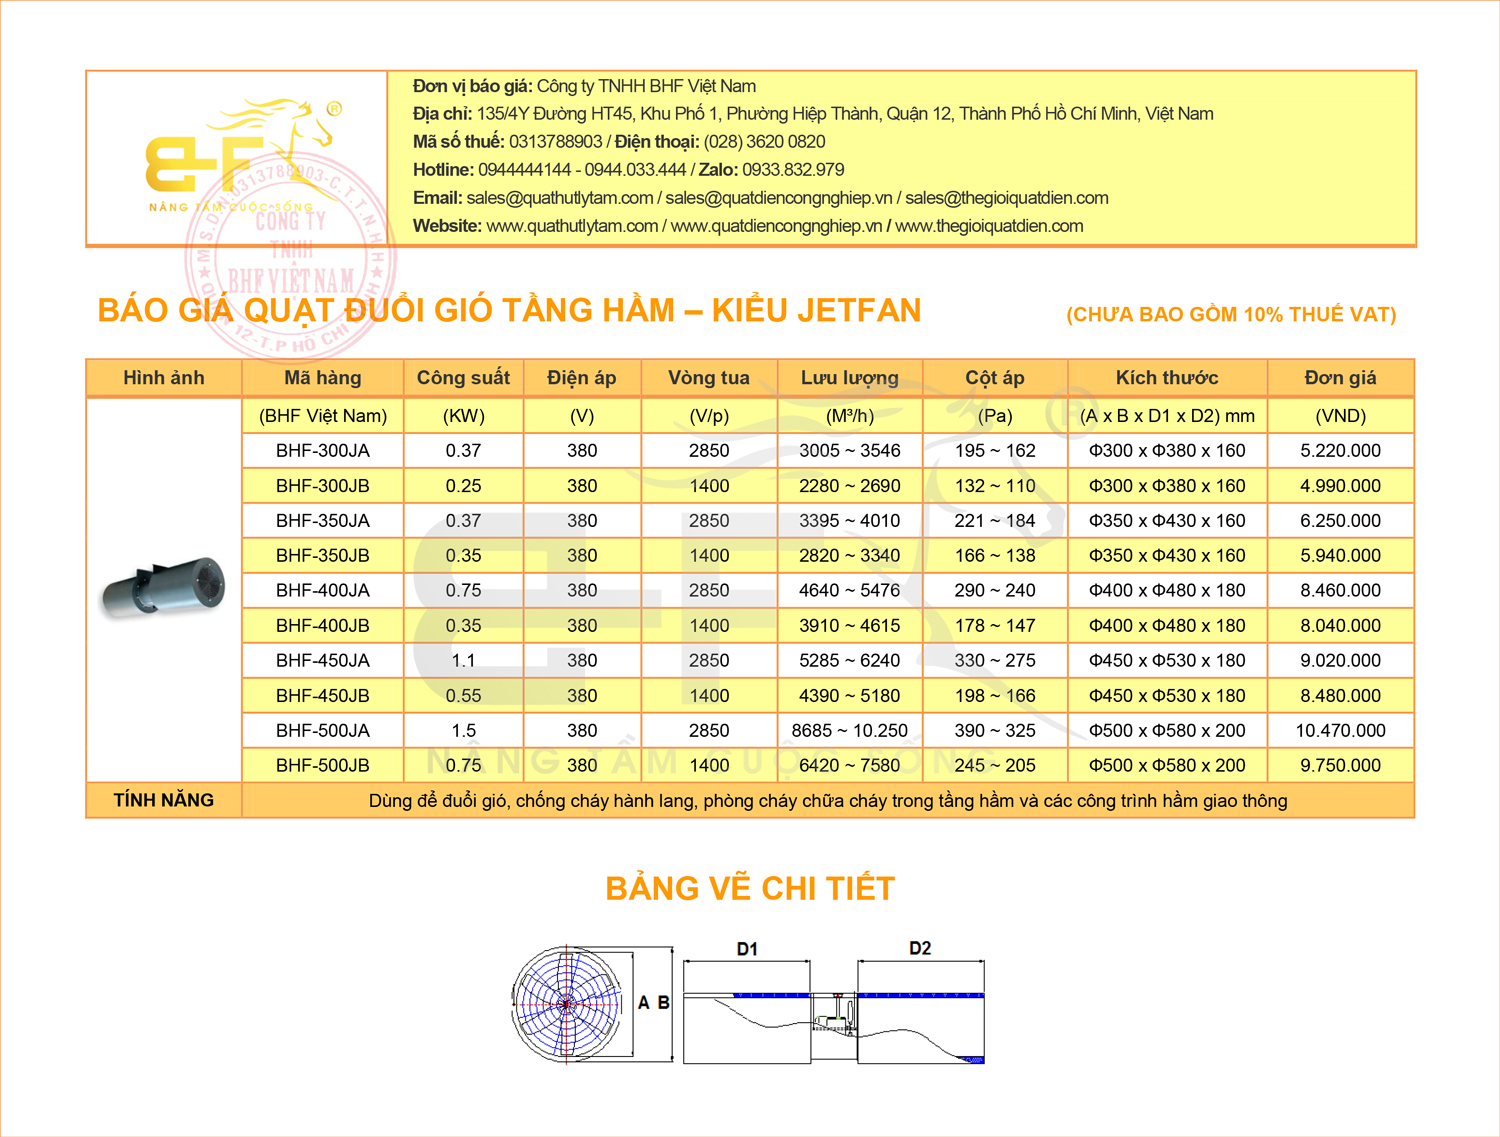 Bảng báo giá sản phẩm và thông số kỹ thuật của quạt đuổi gió tầng hầm kiểu Jetfan